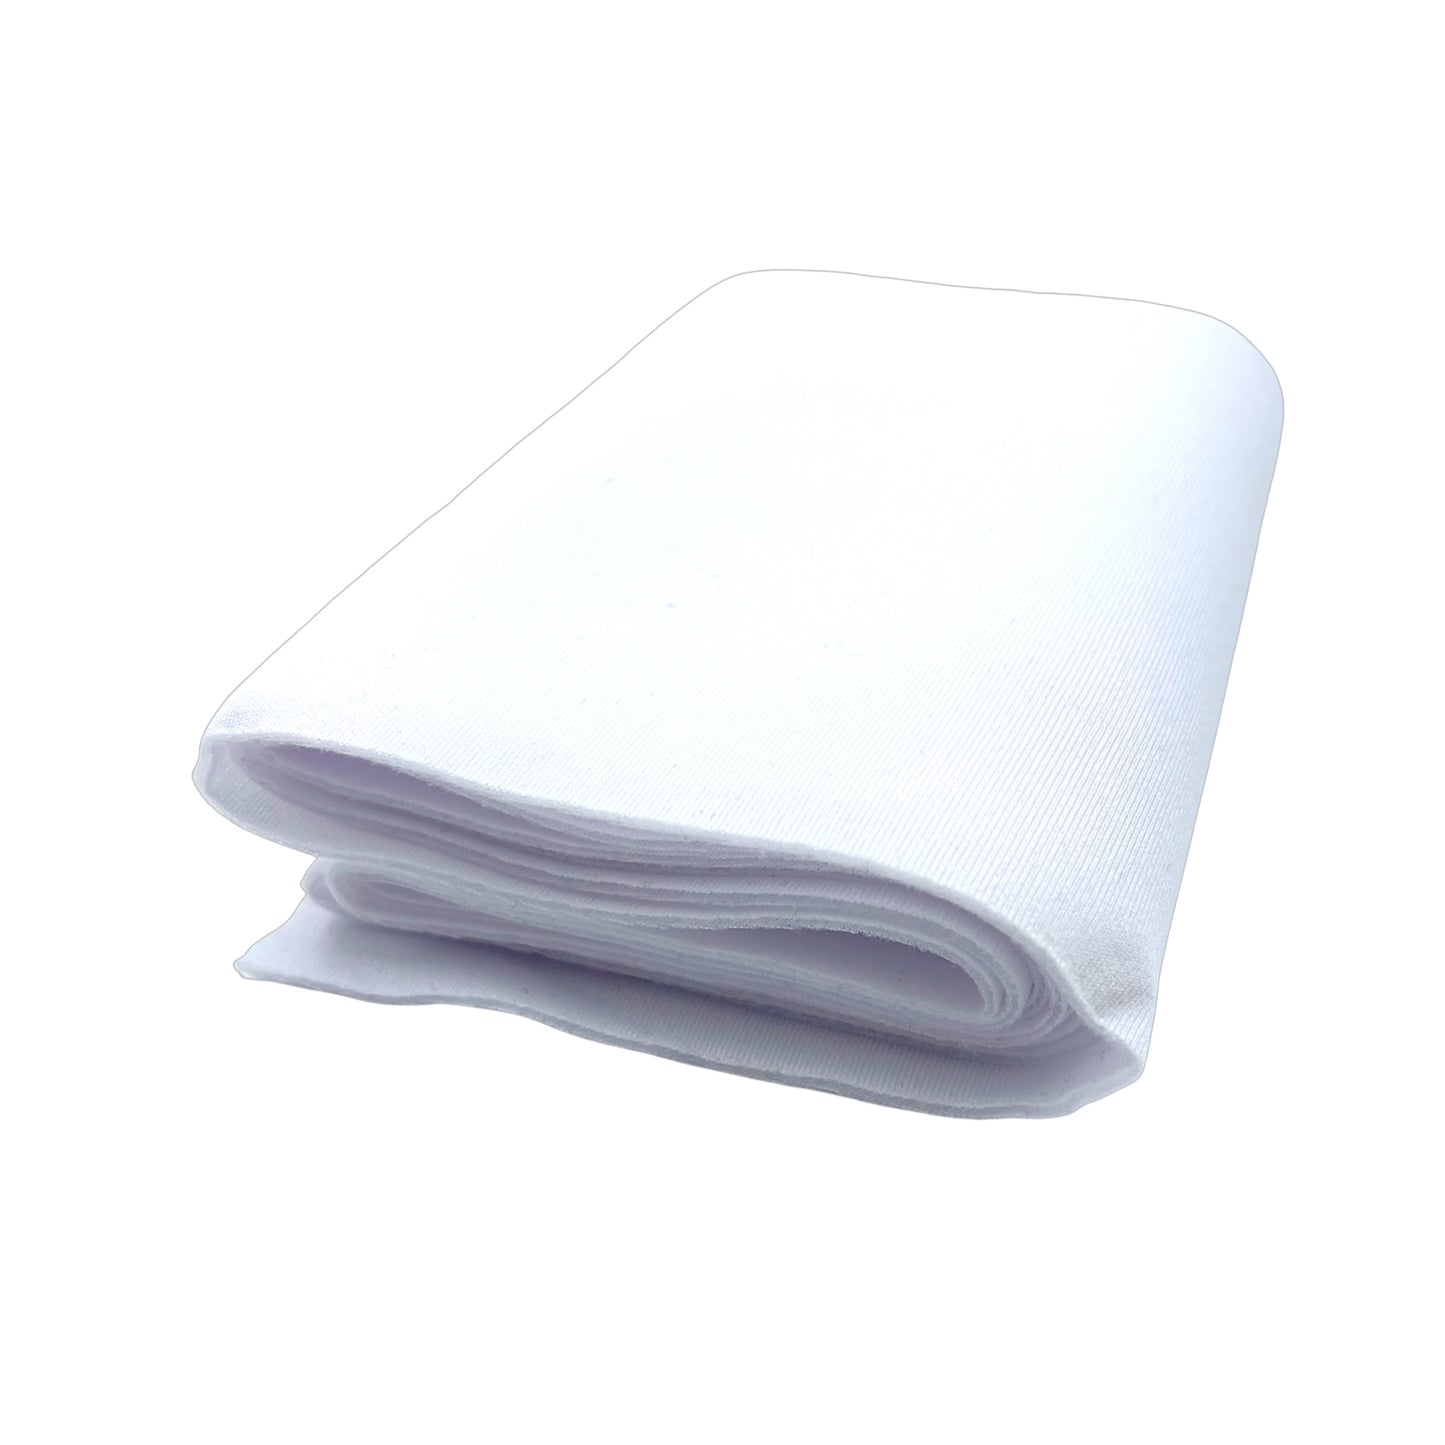 White folded padded neoprene fabric strip.